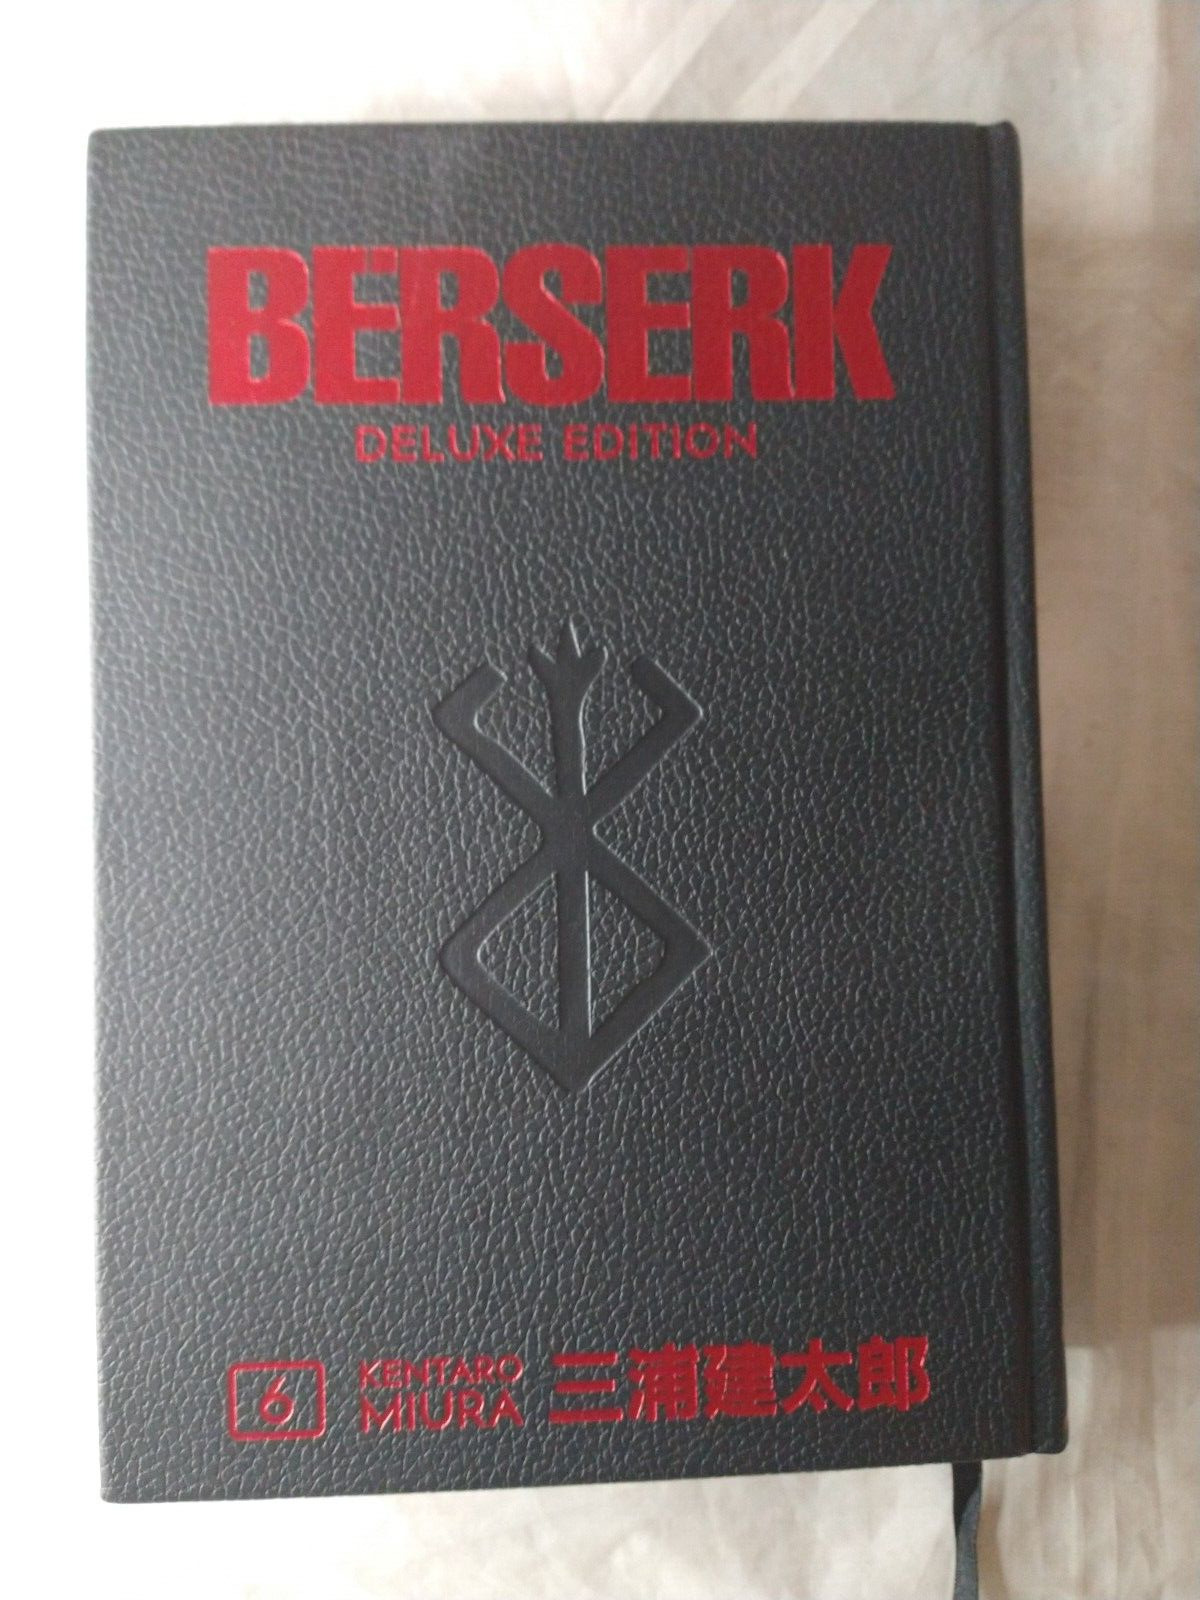 Berserk Deluxe Volume 6 Hardcover Kentaro Miura Dark Horse Comics